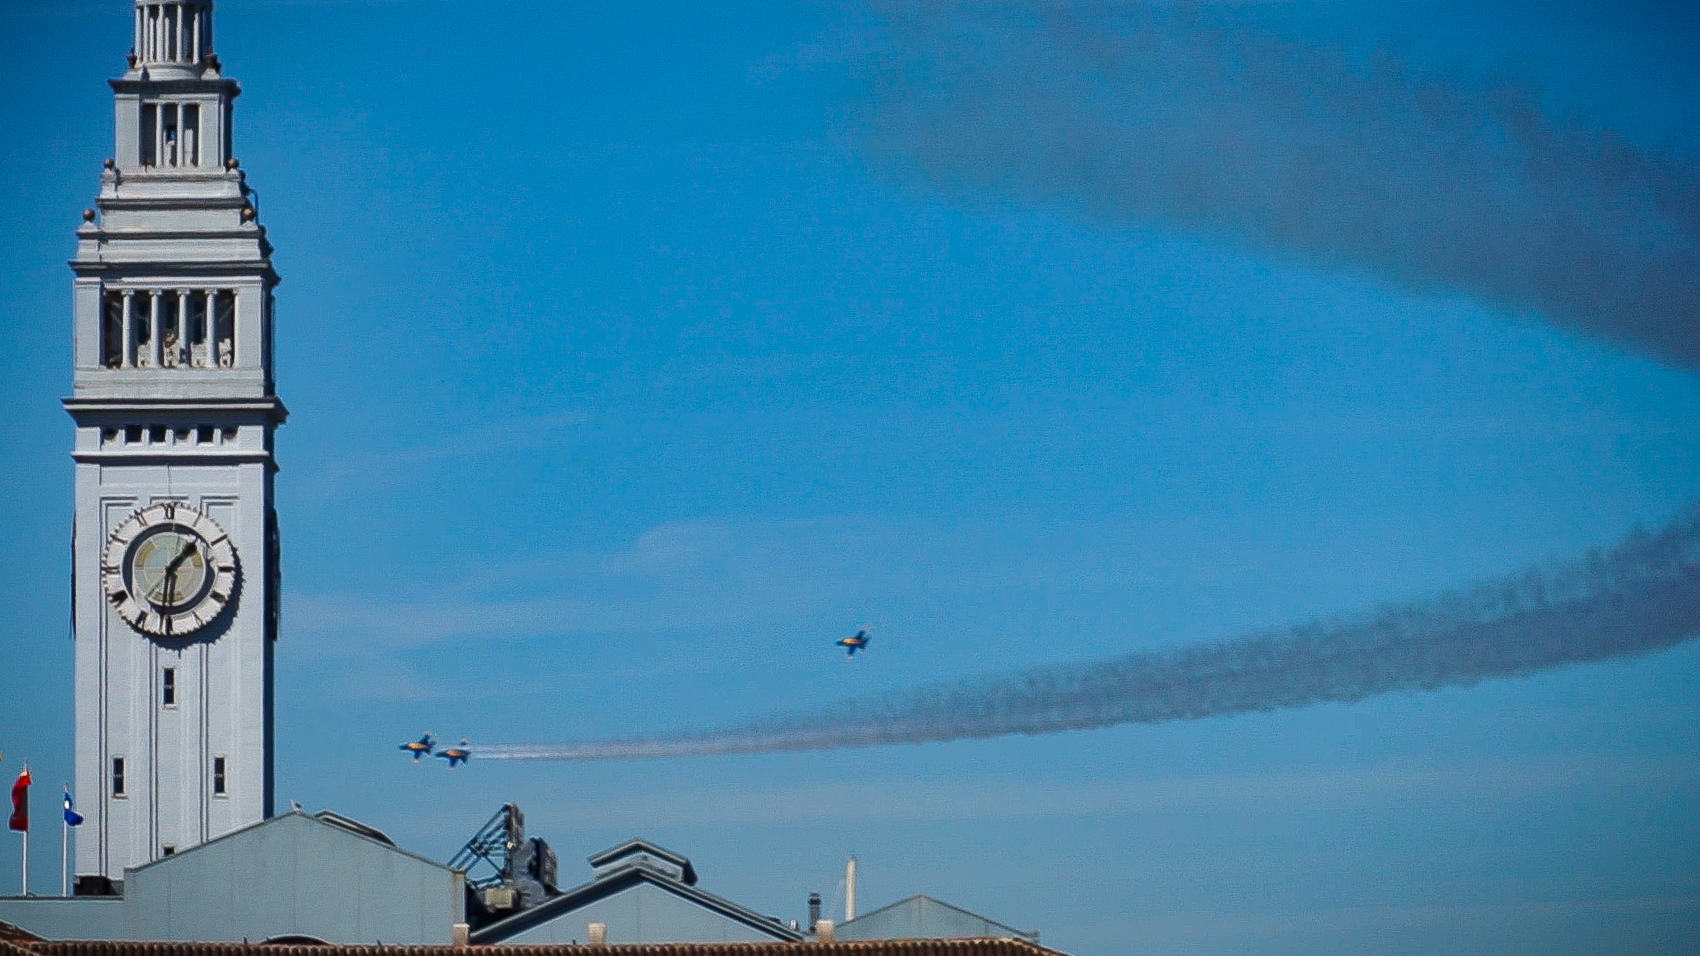 Travel vlog - Blue Angel Fighter Planes Over San Francisco!